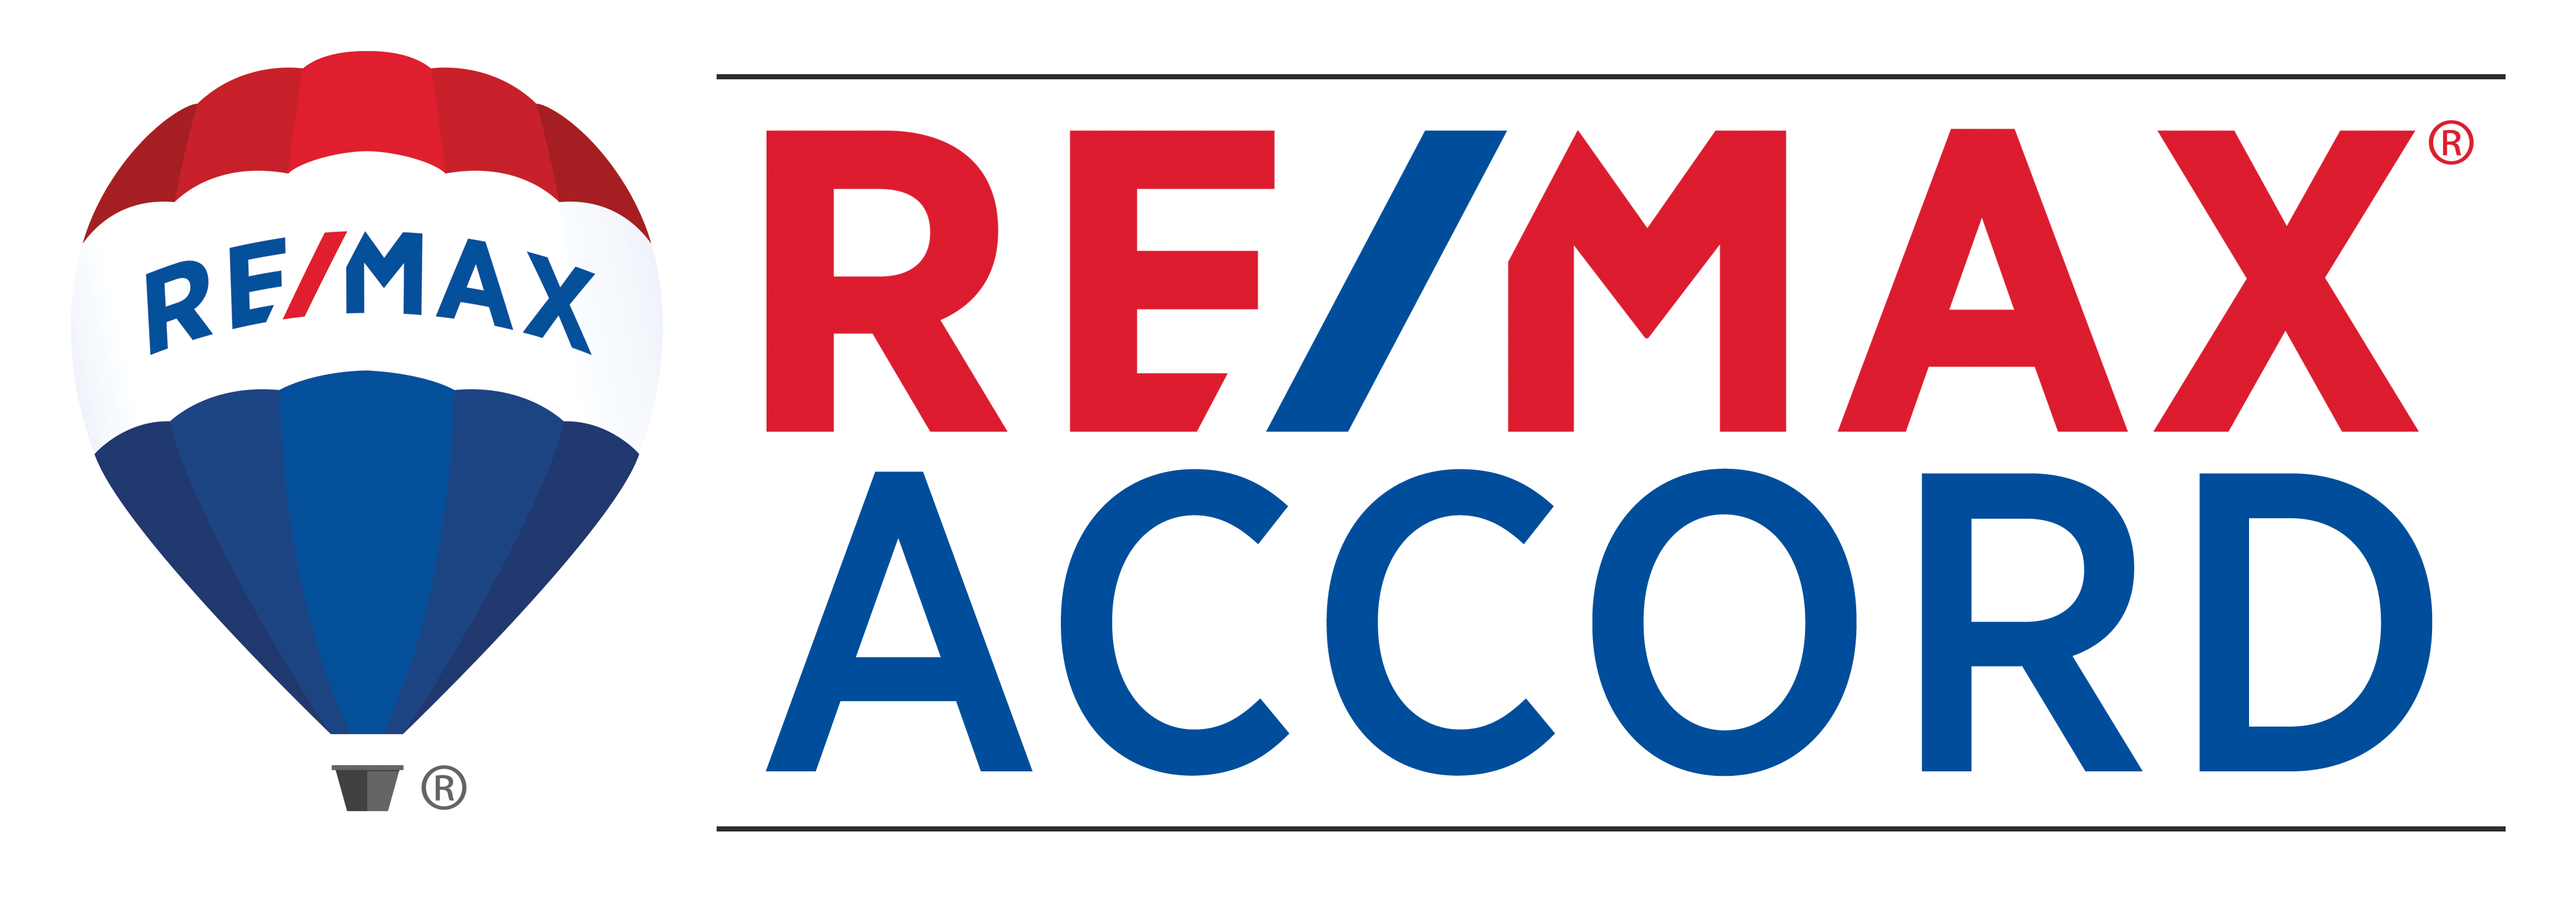 Remax Accord | License# 01357450